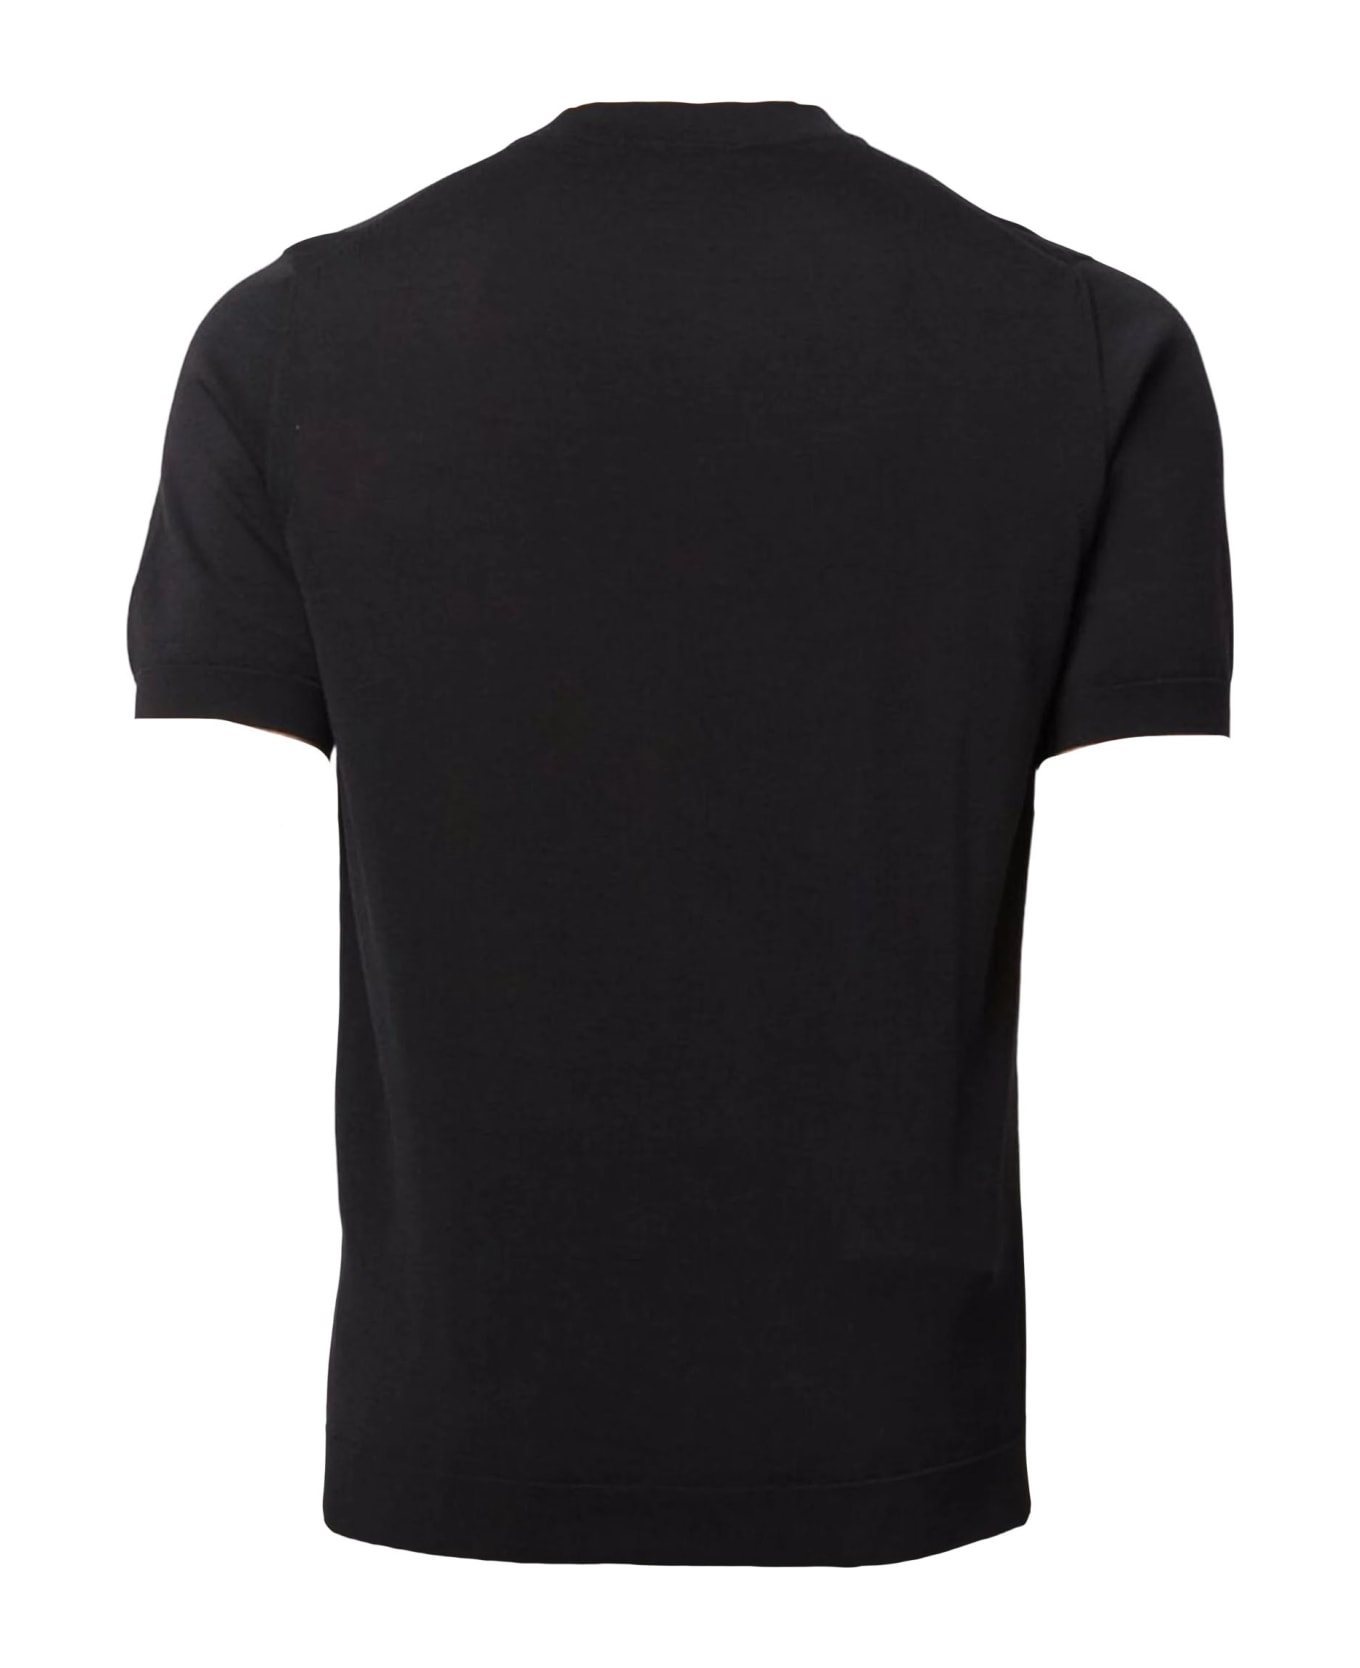 Drumohr Black Cotton T-shirt - Black